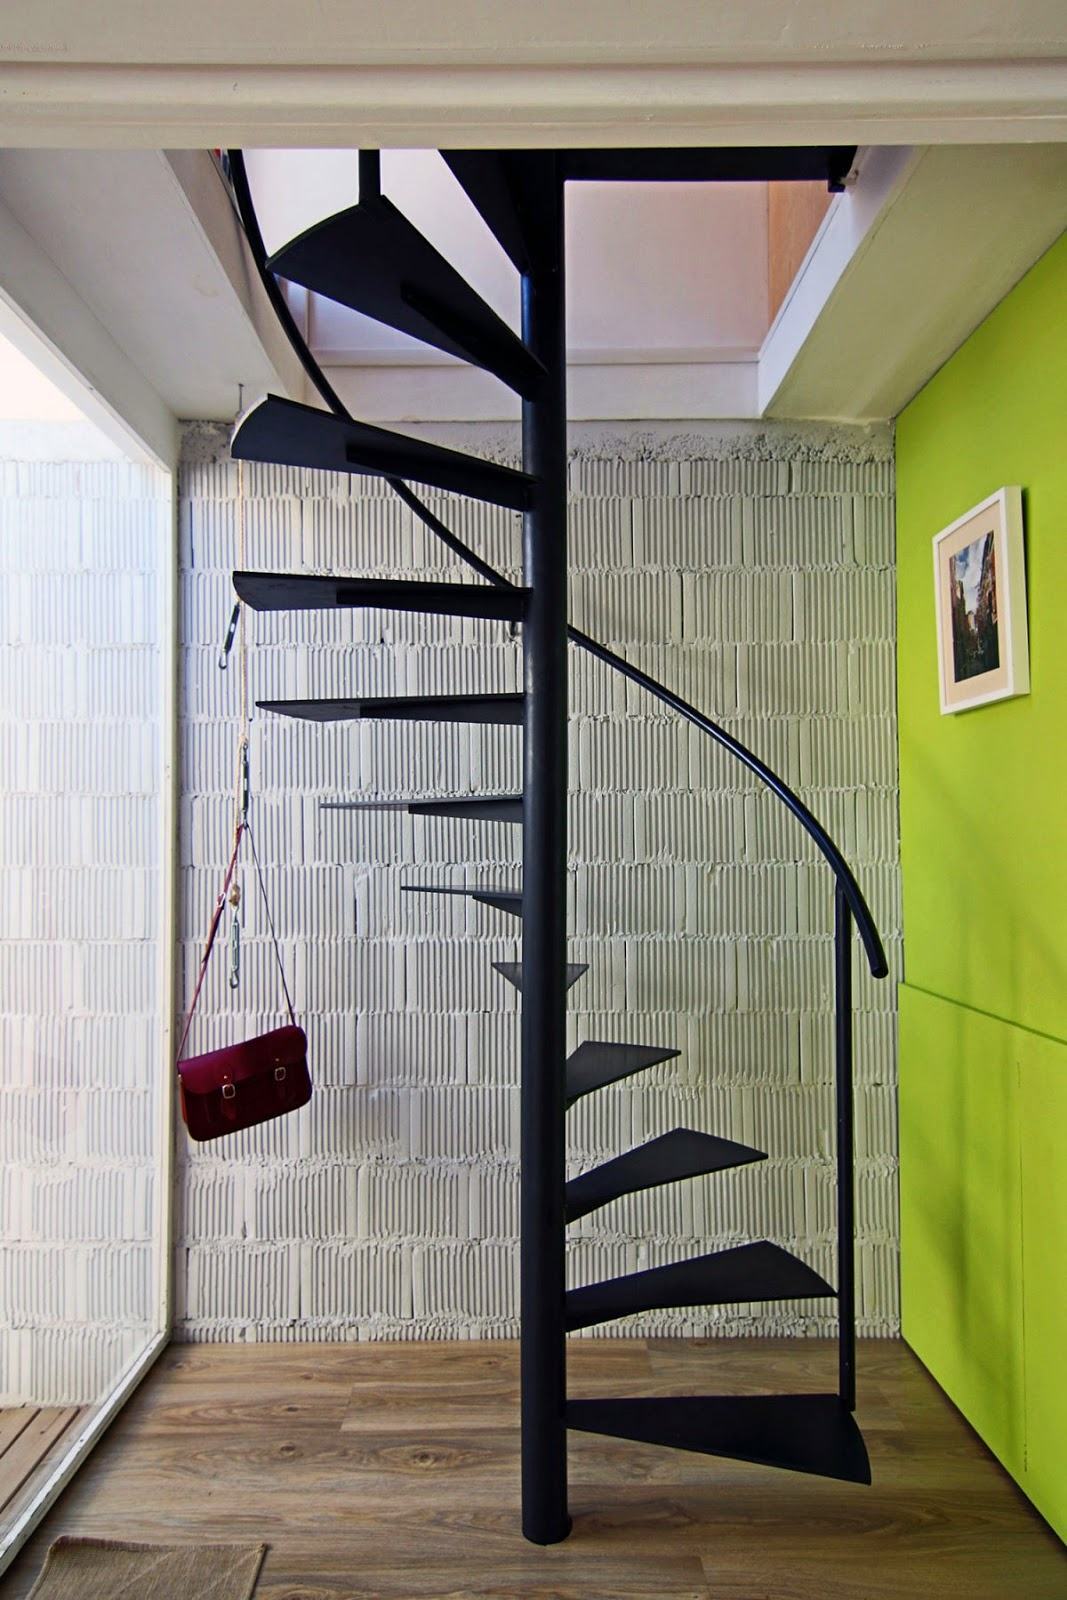 Mesmo com um projeto simples, a escada compôs perfeitamente na proposta